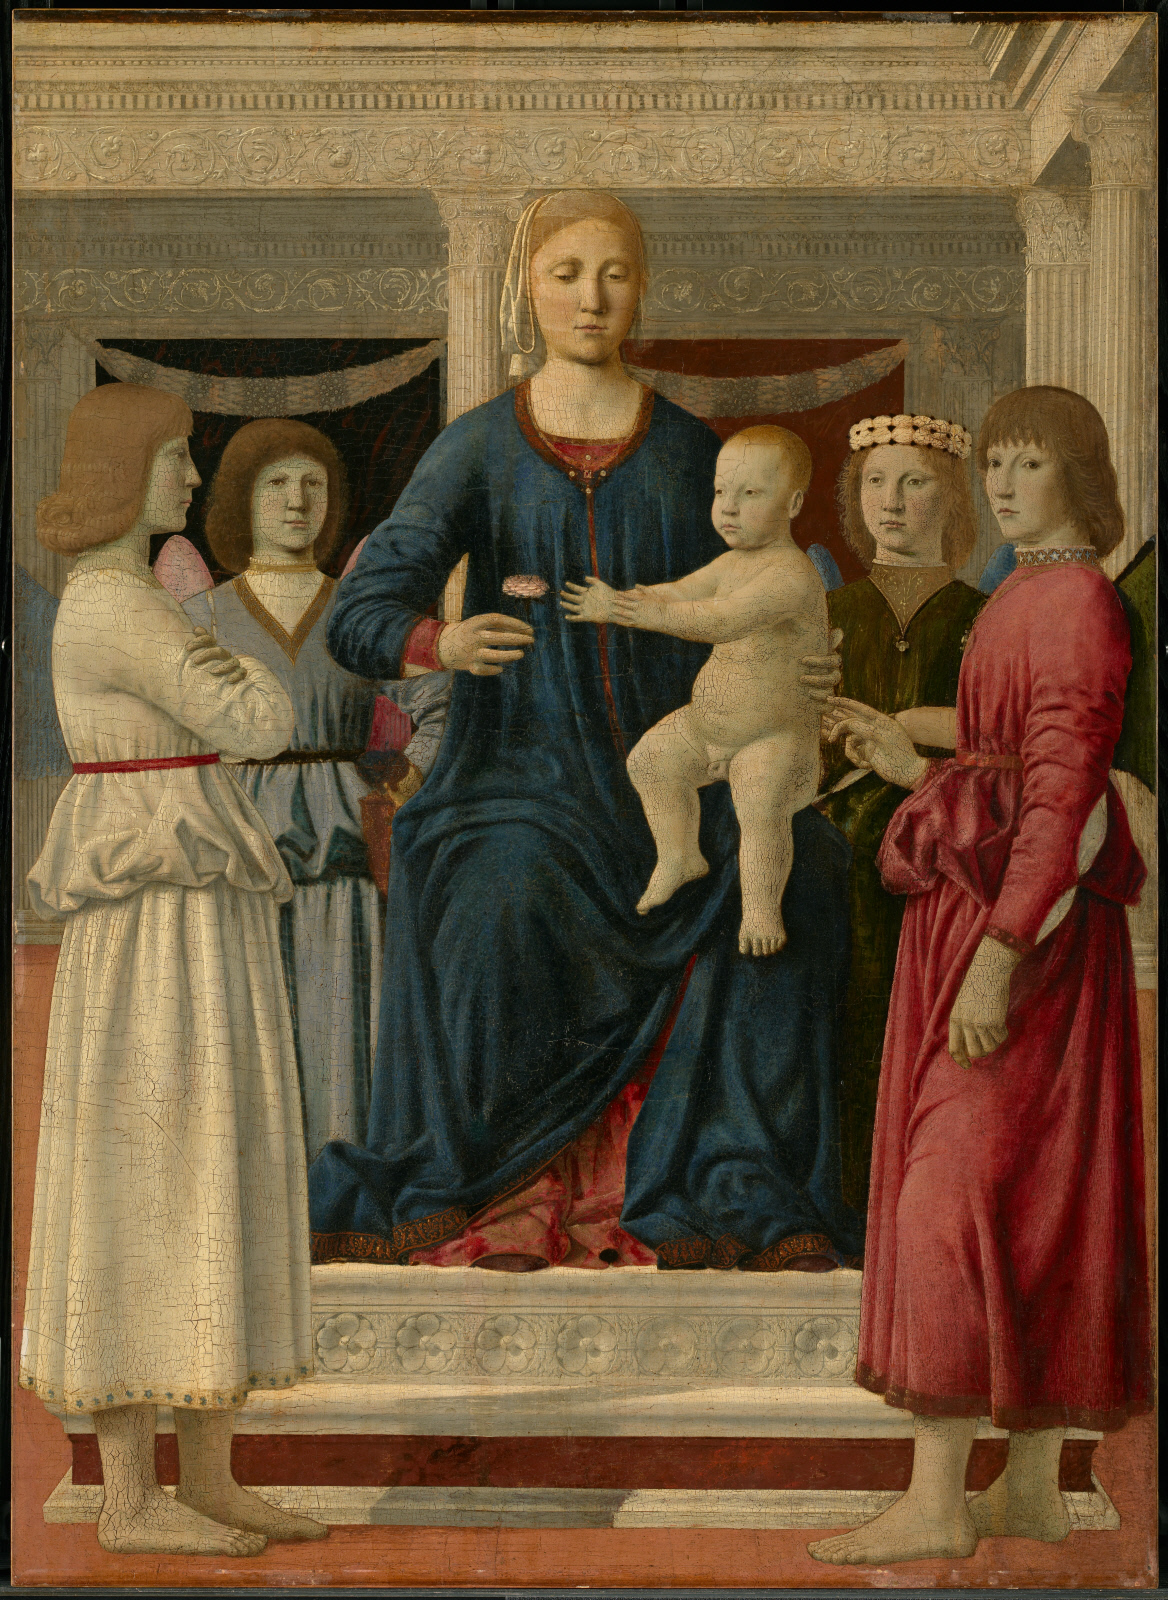 Jungfrau und Kind mit vier Engeln inthronisiert by Piero della Francesca - ca. 1460–70 - 107.8 x 78.4 cm The Clark